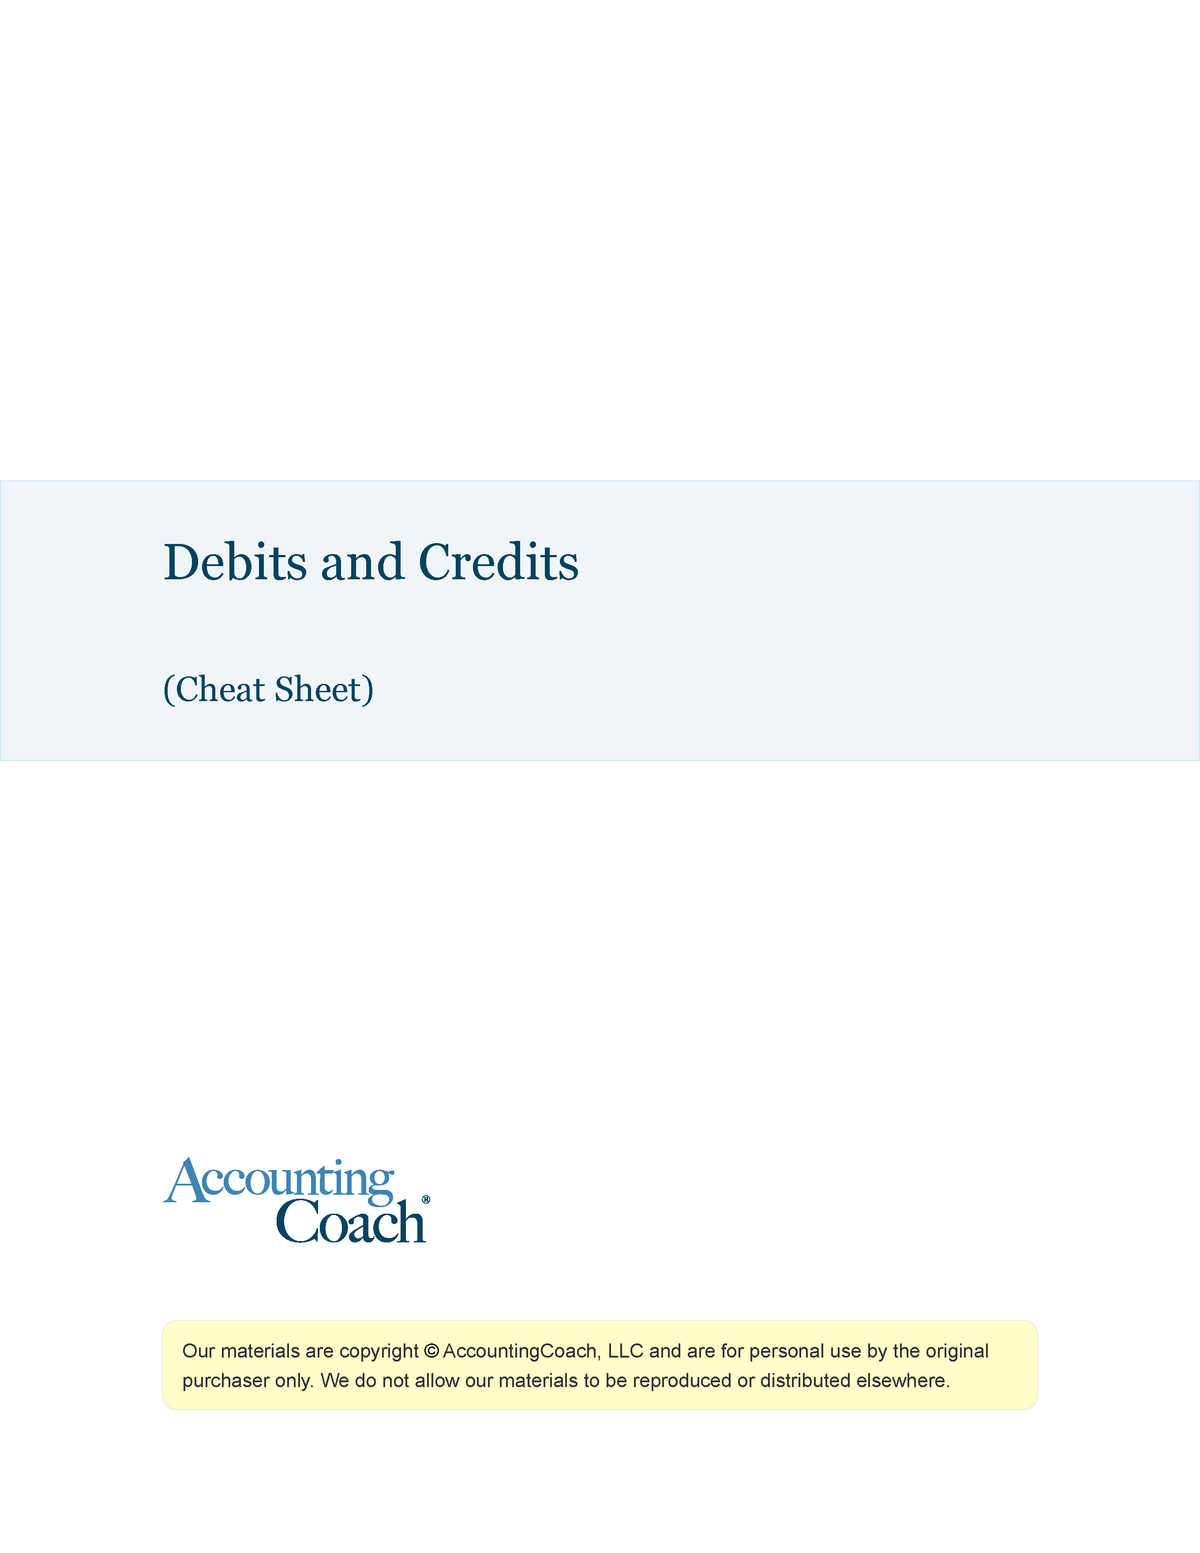 quickbooks ach credits and debits